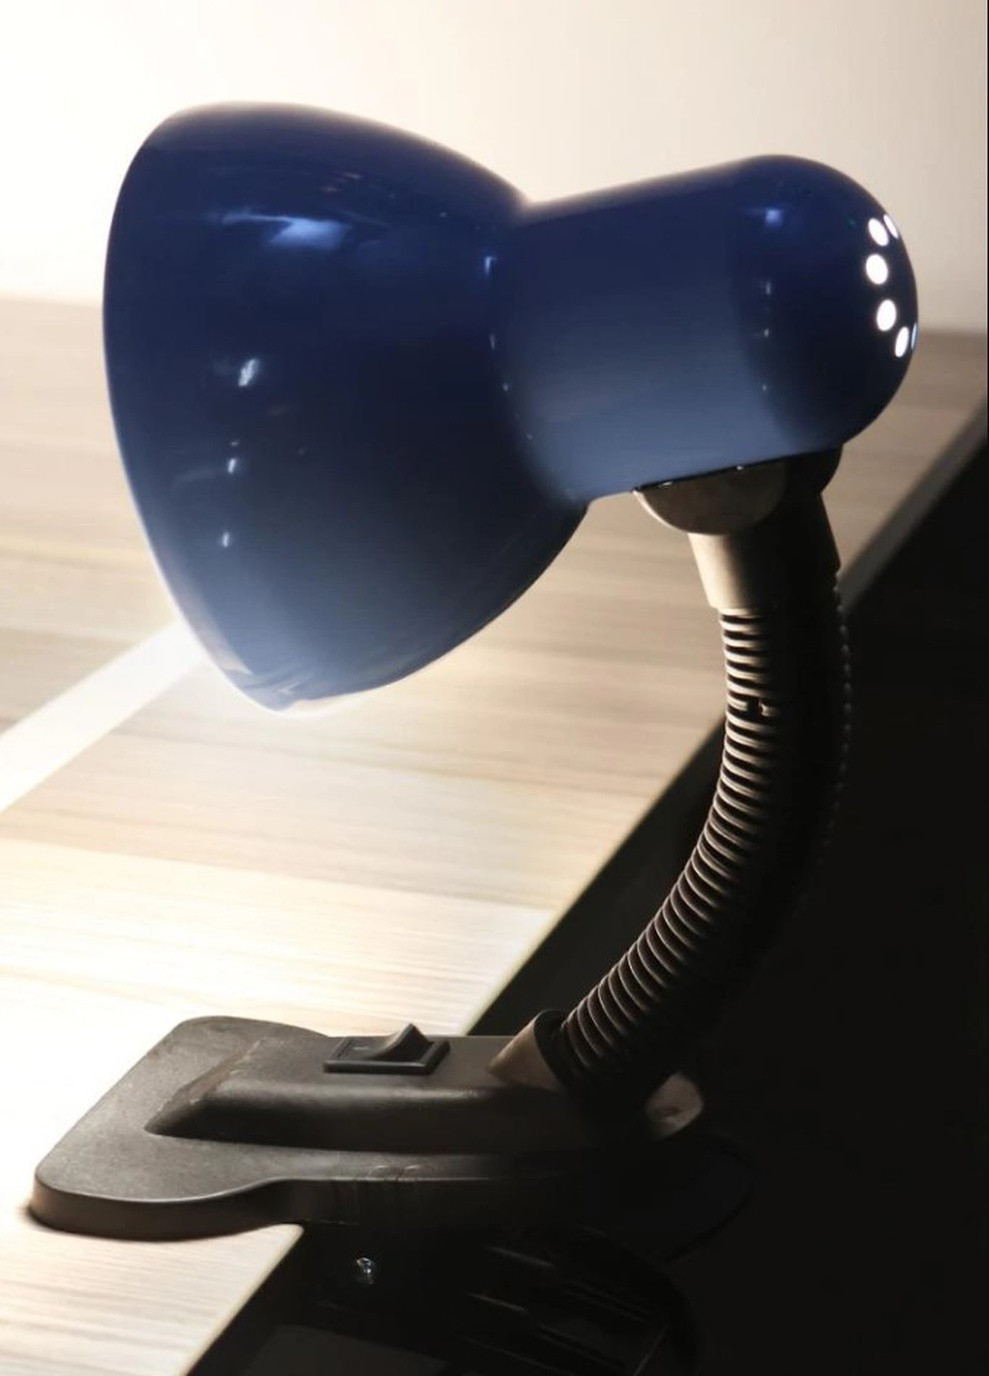 Настольная лампа гибкая детская для офиса для школьника с зажимом на прищепке невысокая цена MTL-01 Blue Brille (253881803)